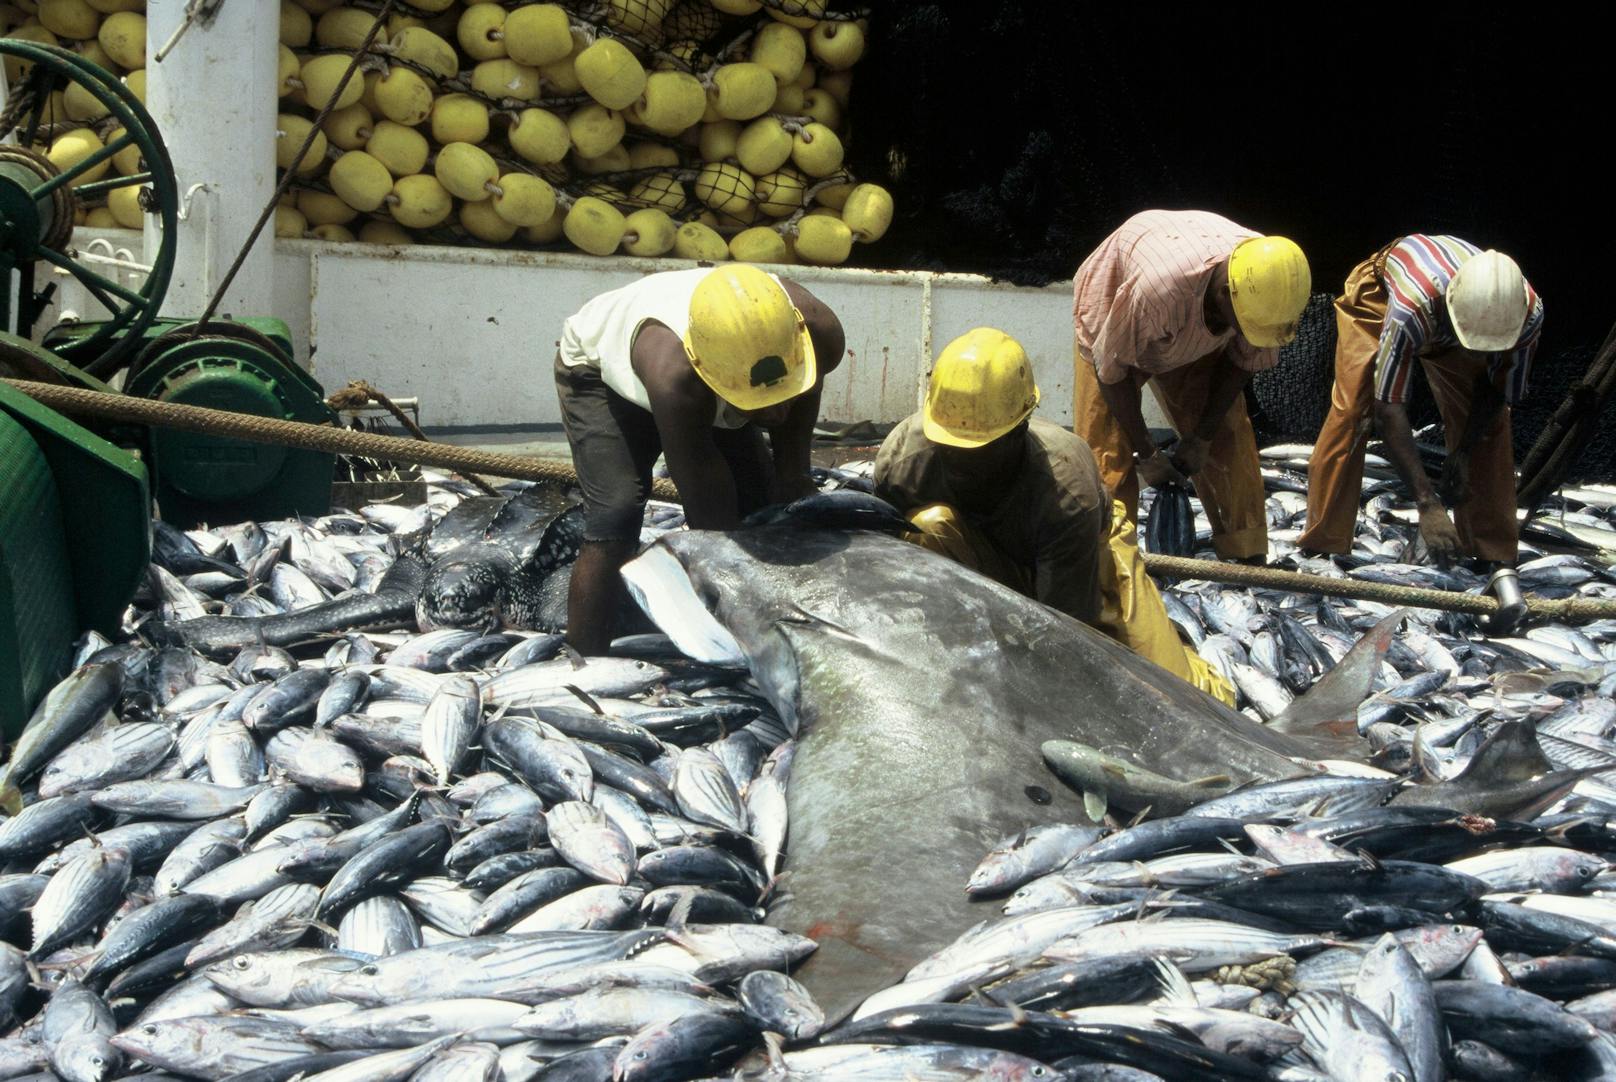 Der ungewollte Fang von Meerestieren in der Fischerei, Beifang genannt, ist eine der größten Bedrohungen für seltene Arten in den Ozeanen.